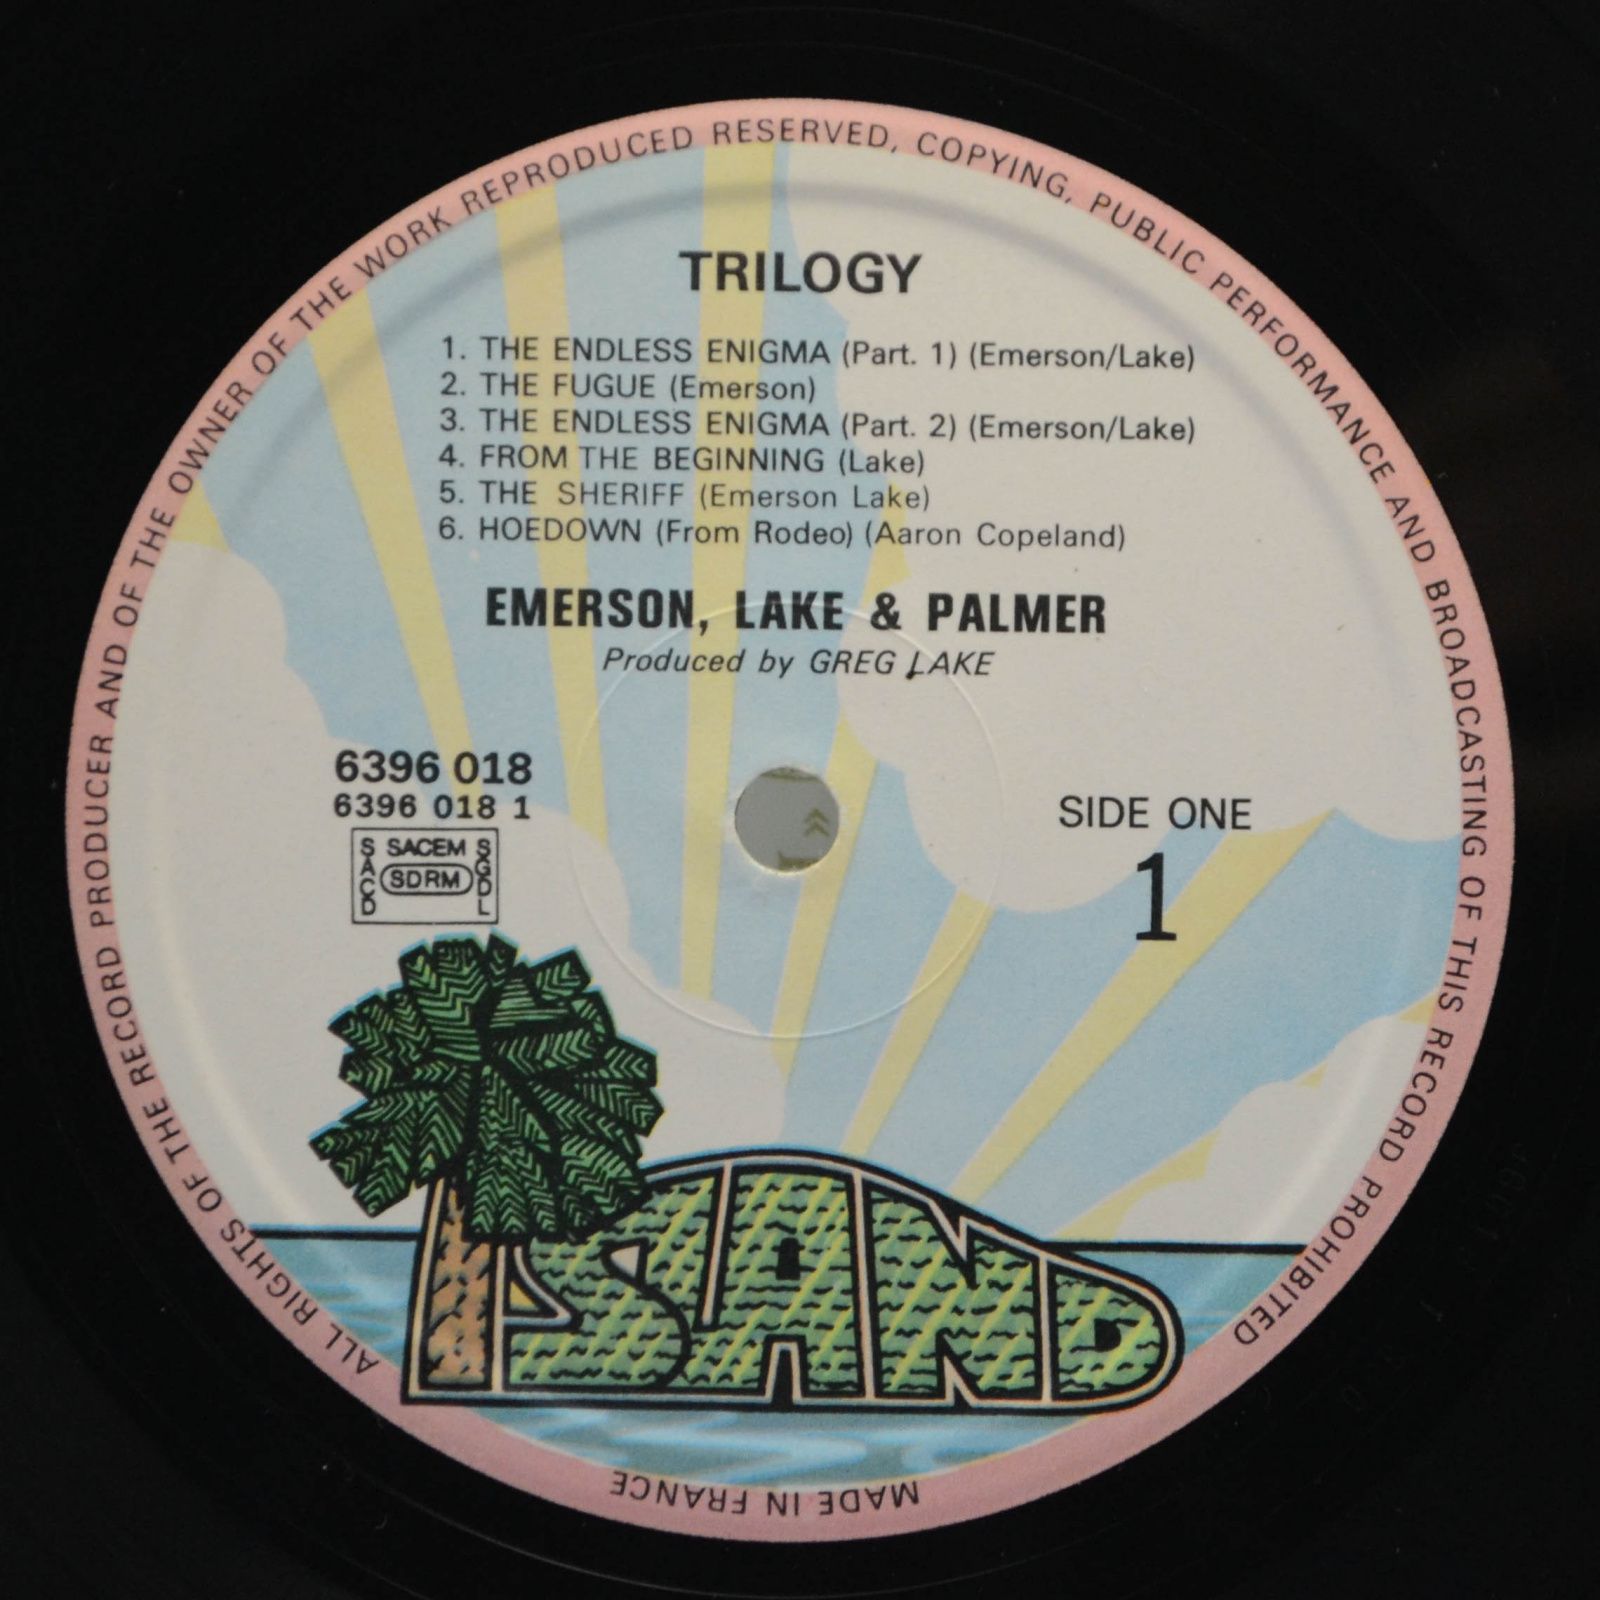 Emerson, Lake & Palmer — Trilogy, 1972